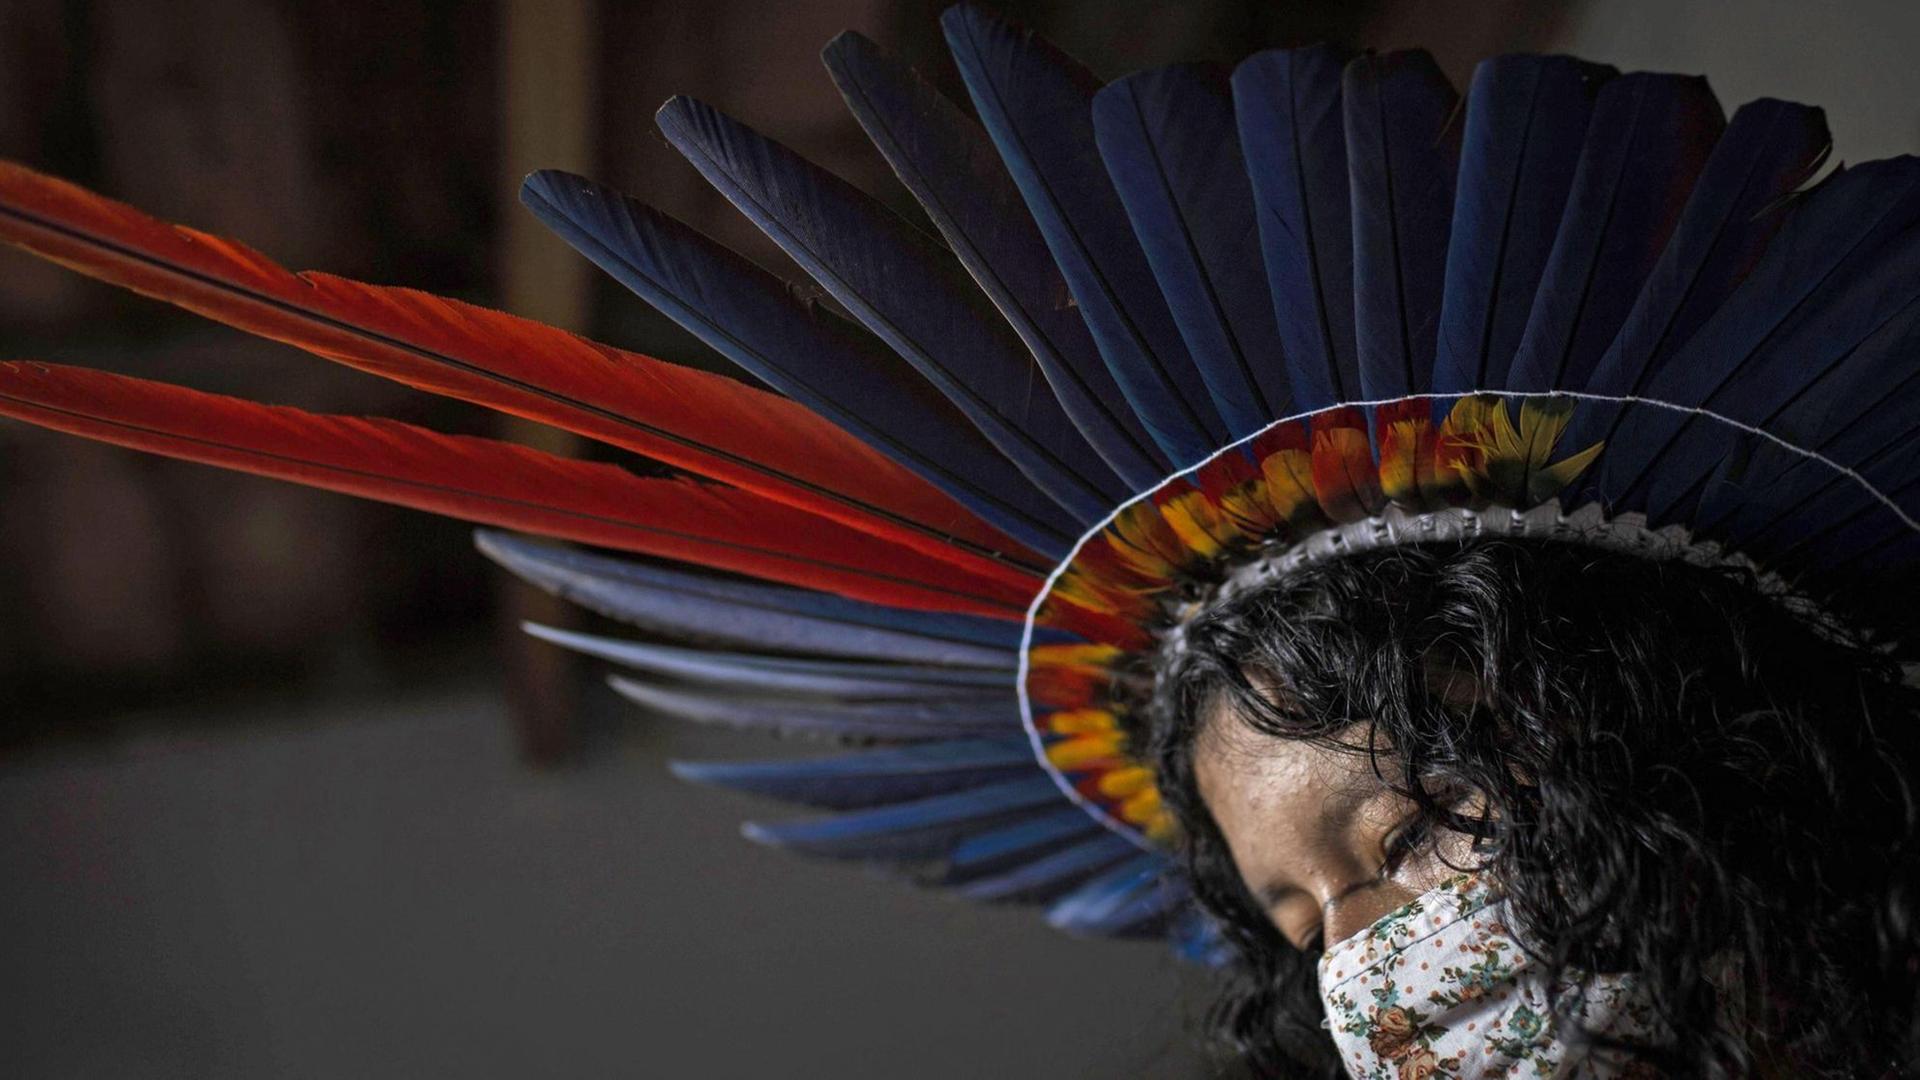 Eine Indigena in Brasilien mit einem Mundschutz und mit dem Kopfschmuck des Sateré-Mawé Volkes